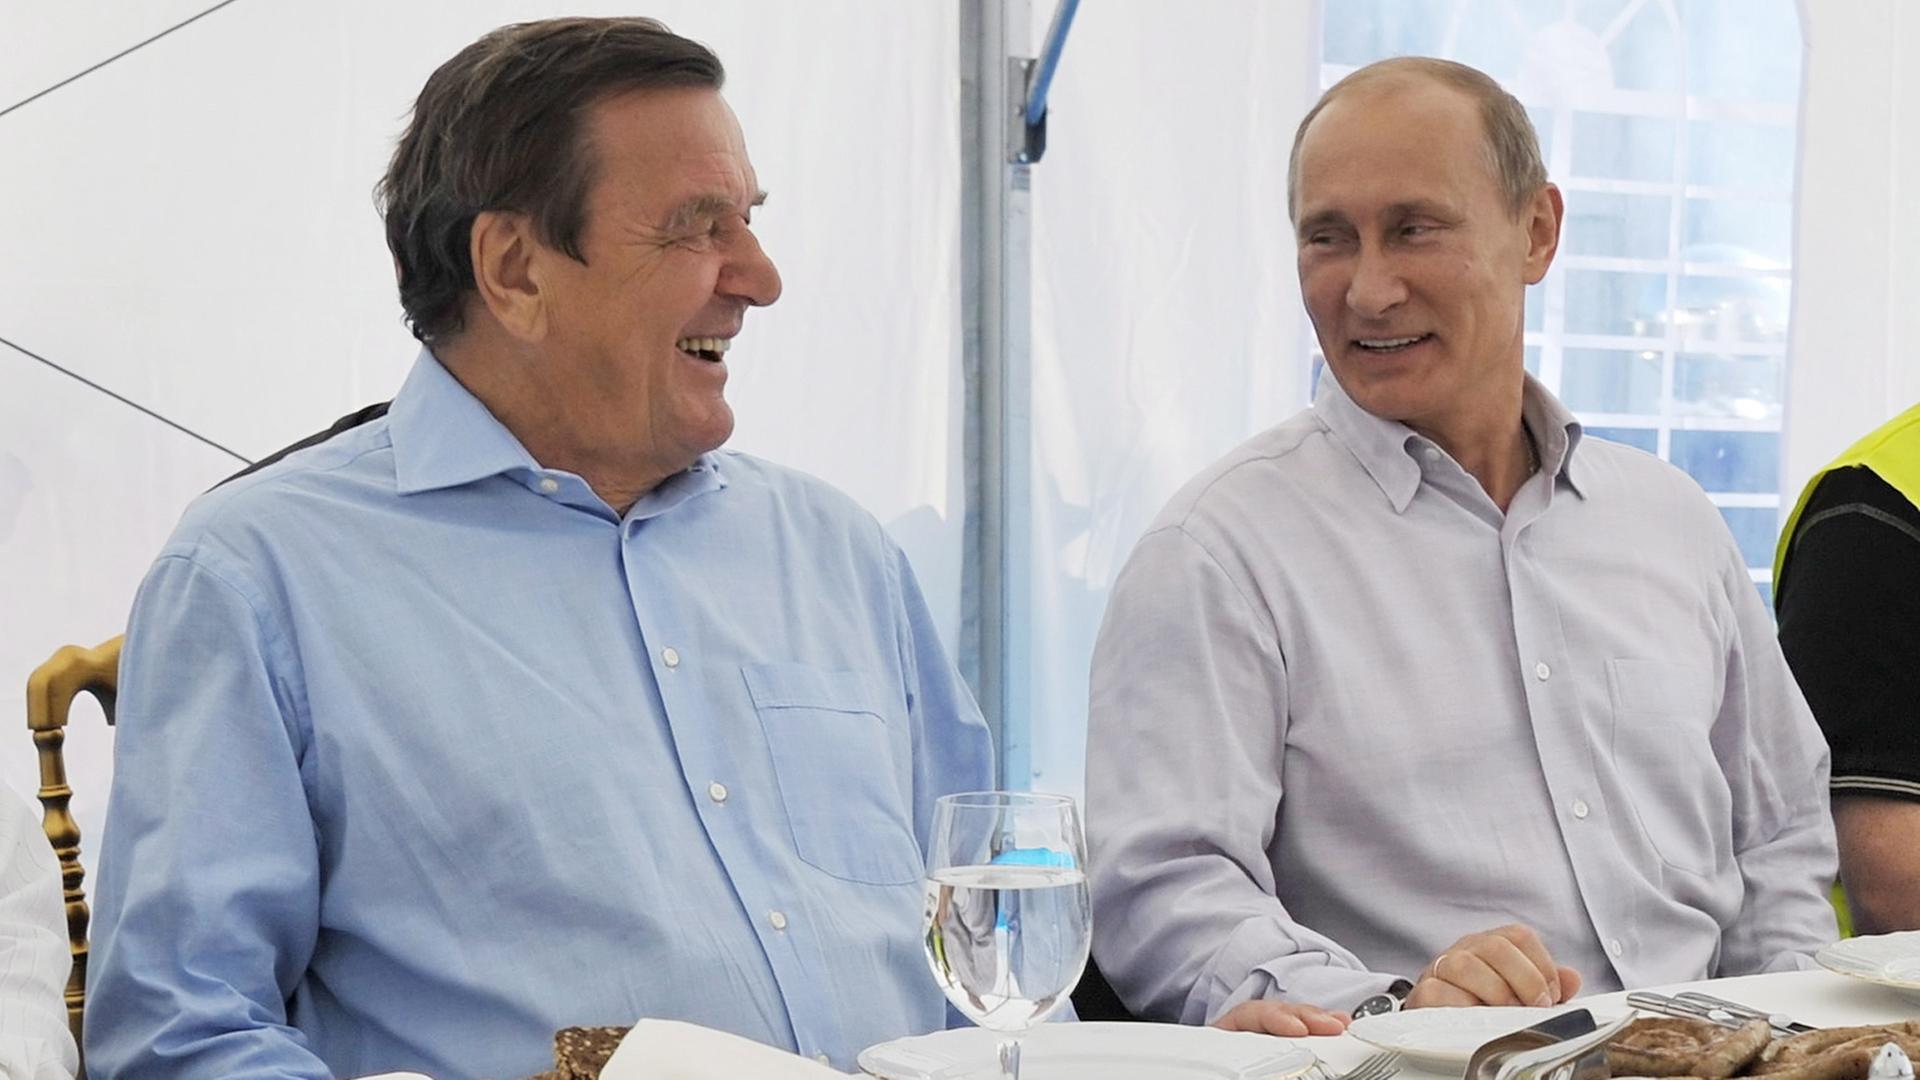 Russlands Präsident Wladimir Putin und der frühere Bundeskanzler Gerhard Schröder gemeinsam an einem gedeckten Tisch 2011 bei einem Treffen in Russland.